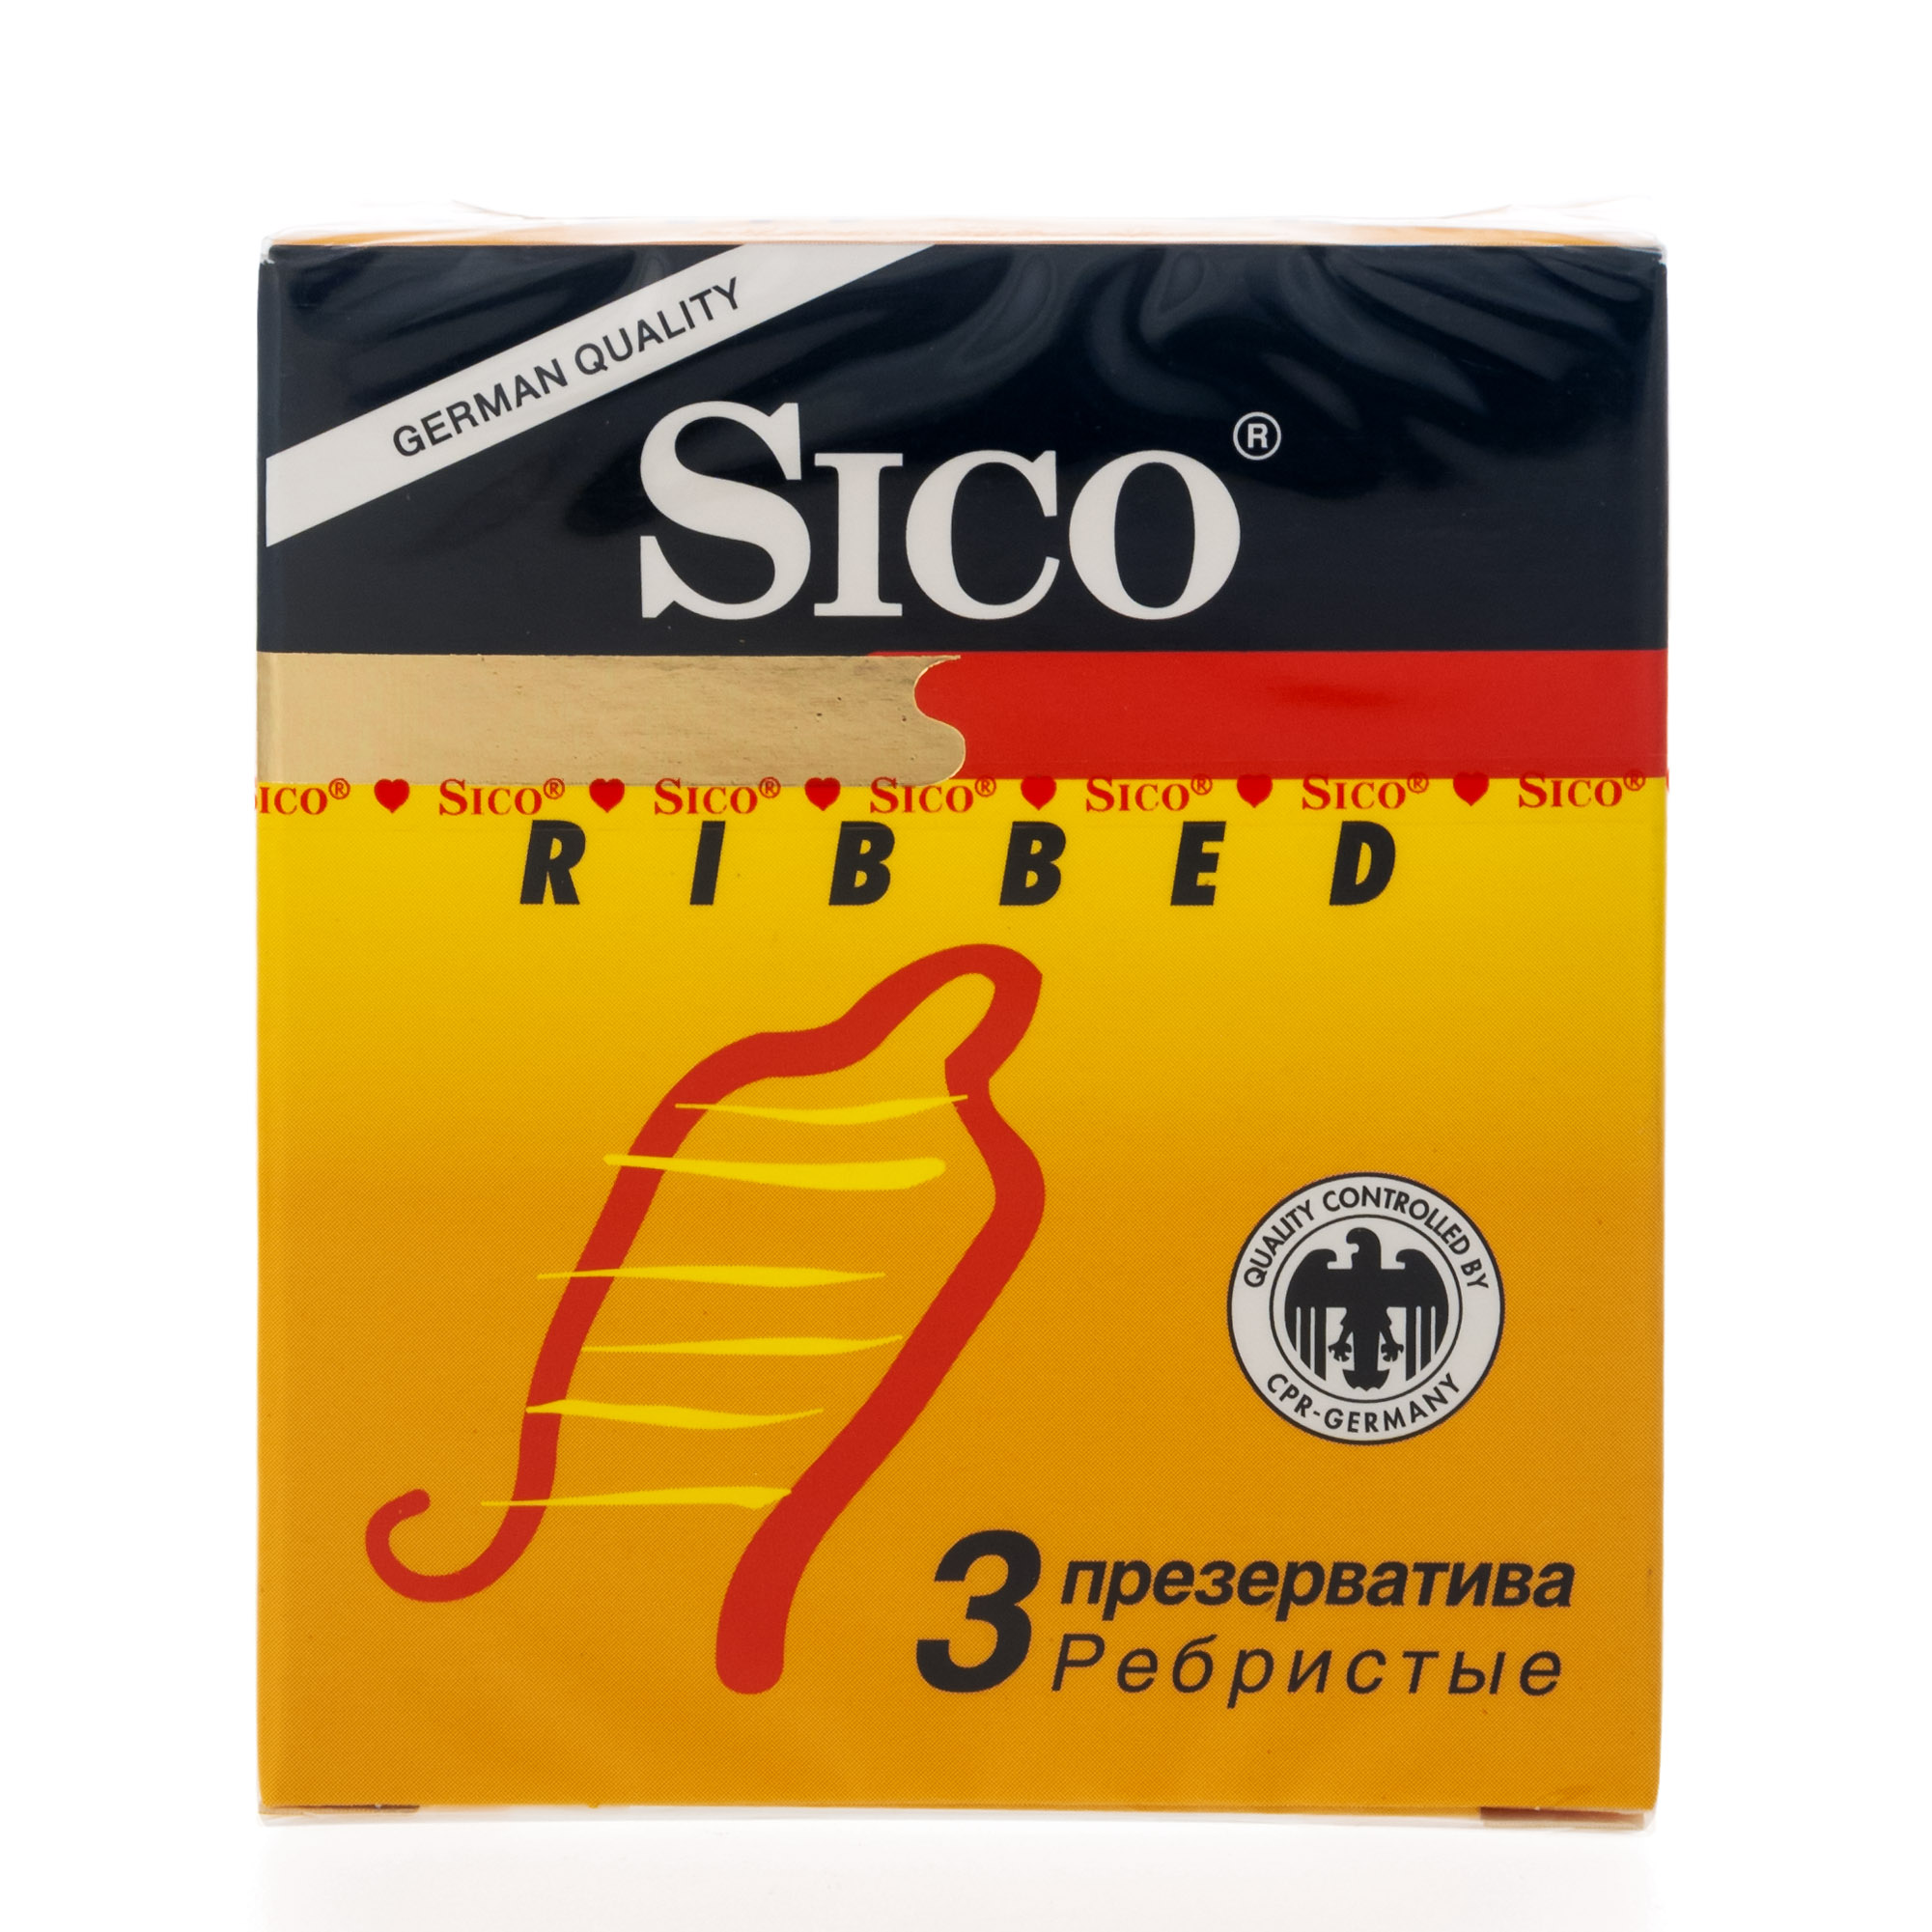 Сико презервативы Риббед ребристые №3 презервативы sico сико ribbed ребристые 3 шт